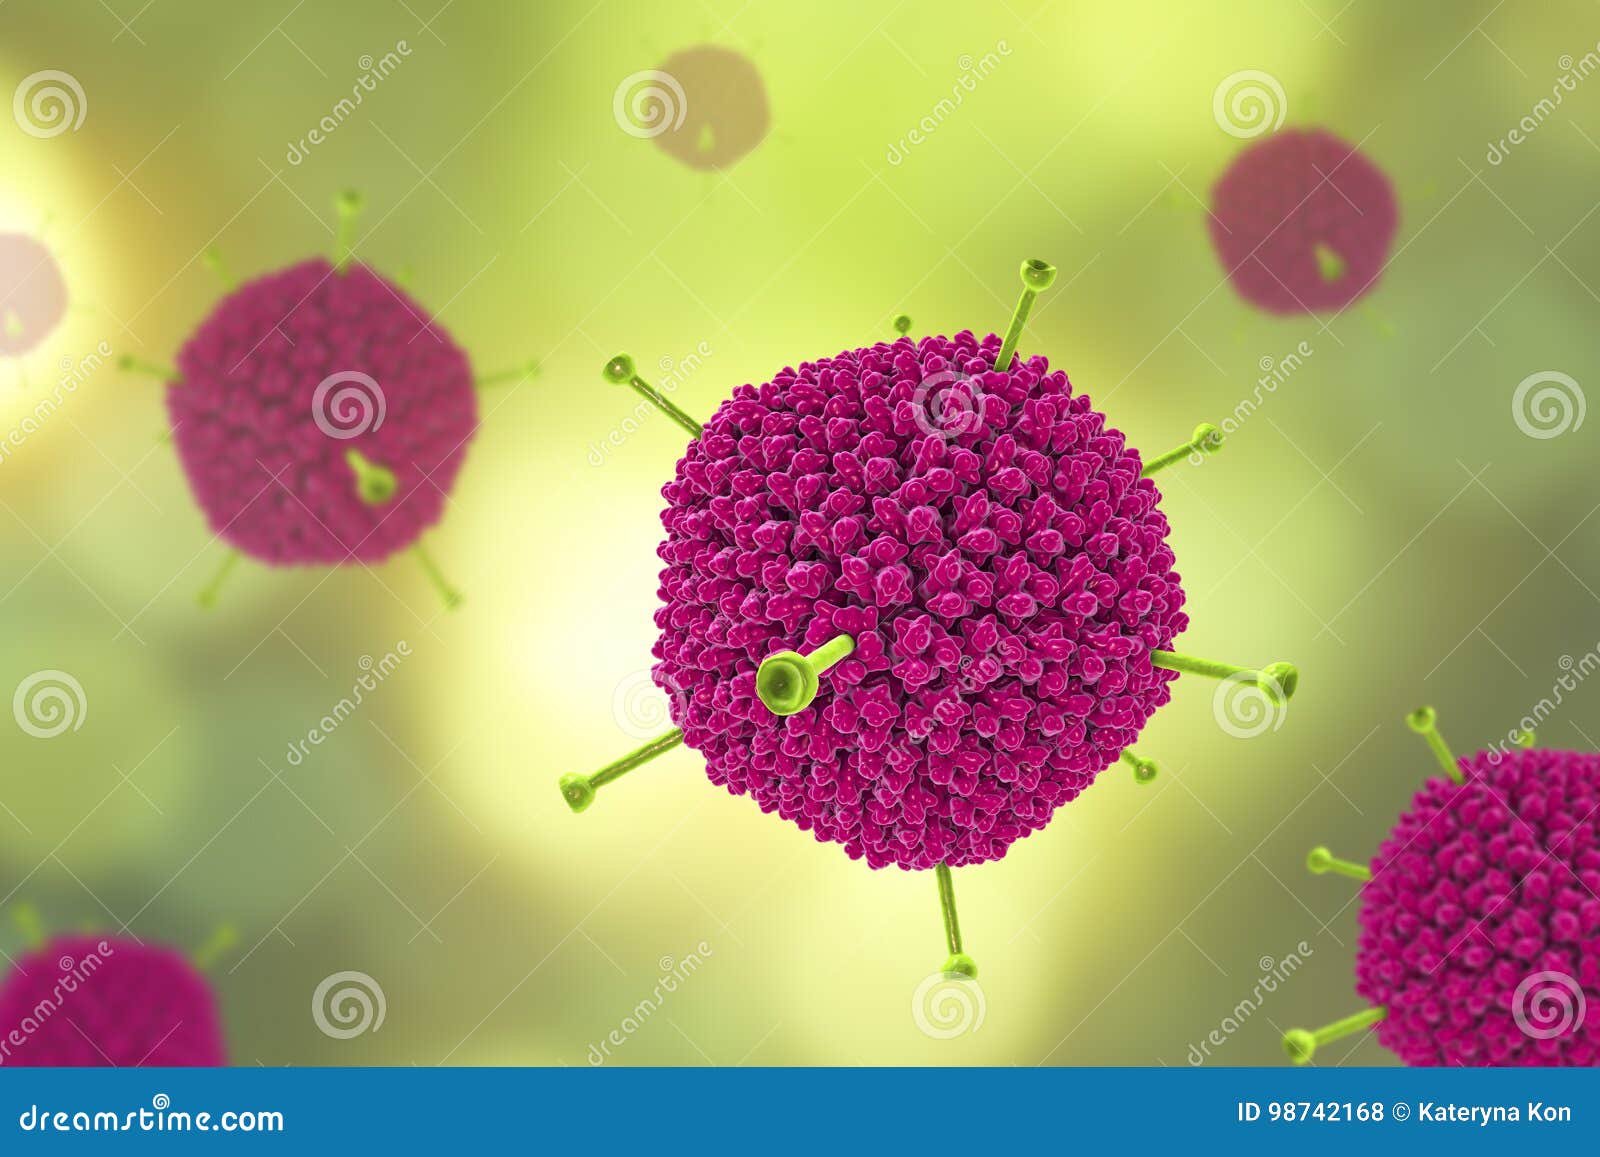 molecular model of adenovirus